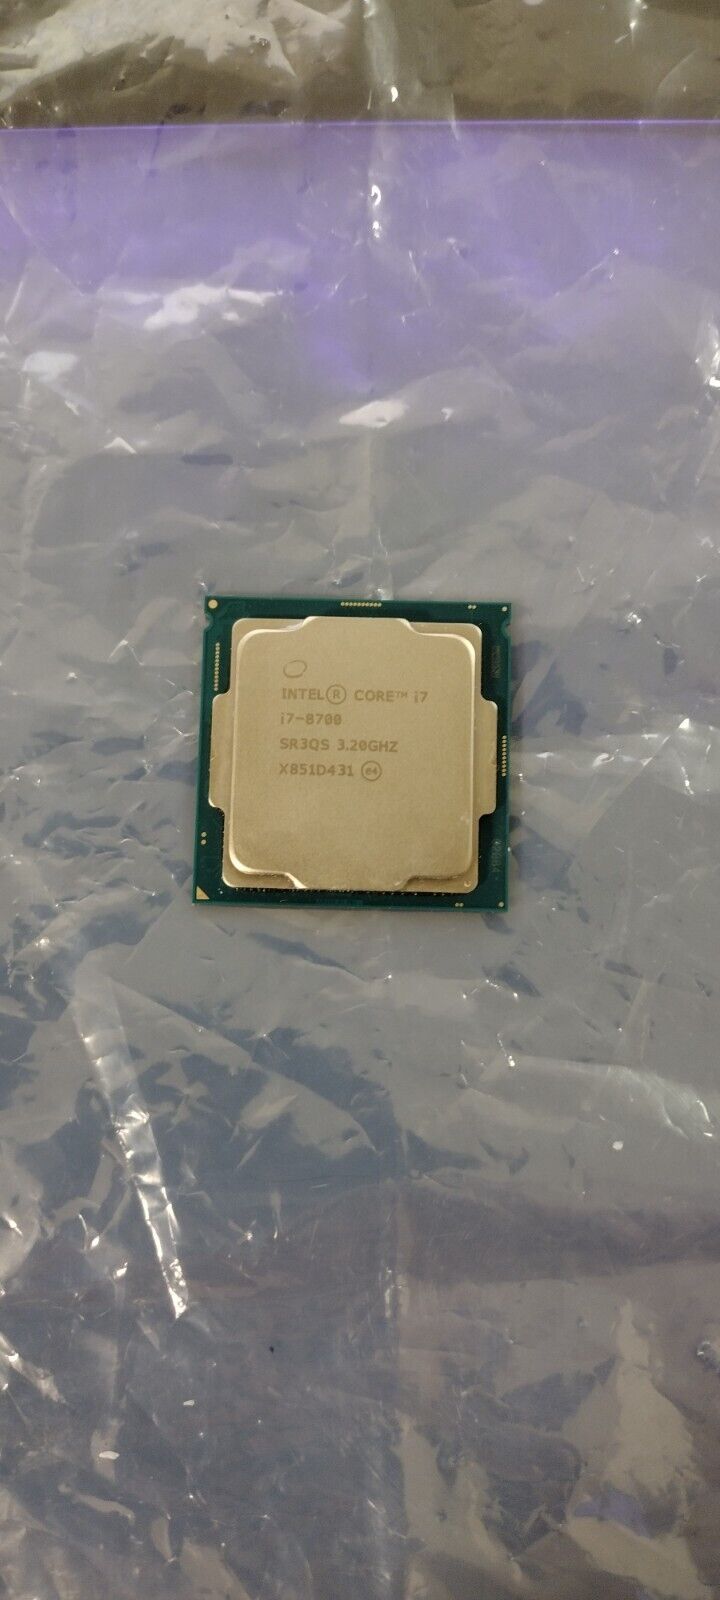 Intel Core i7-8700 Processor (3.2 GHz, 6 Cores, LGA 1151) - SR3QS